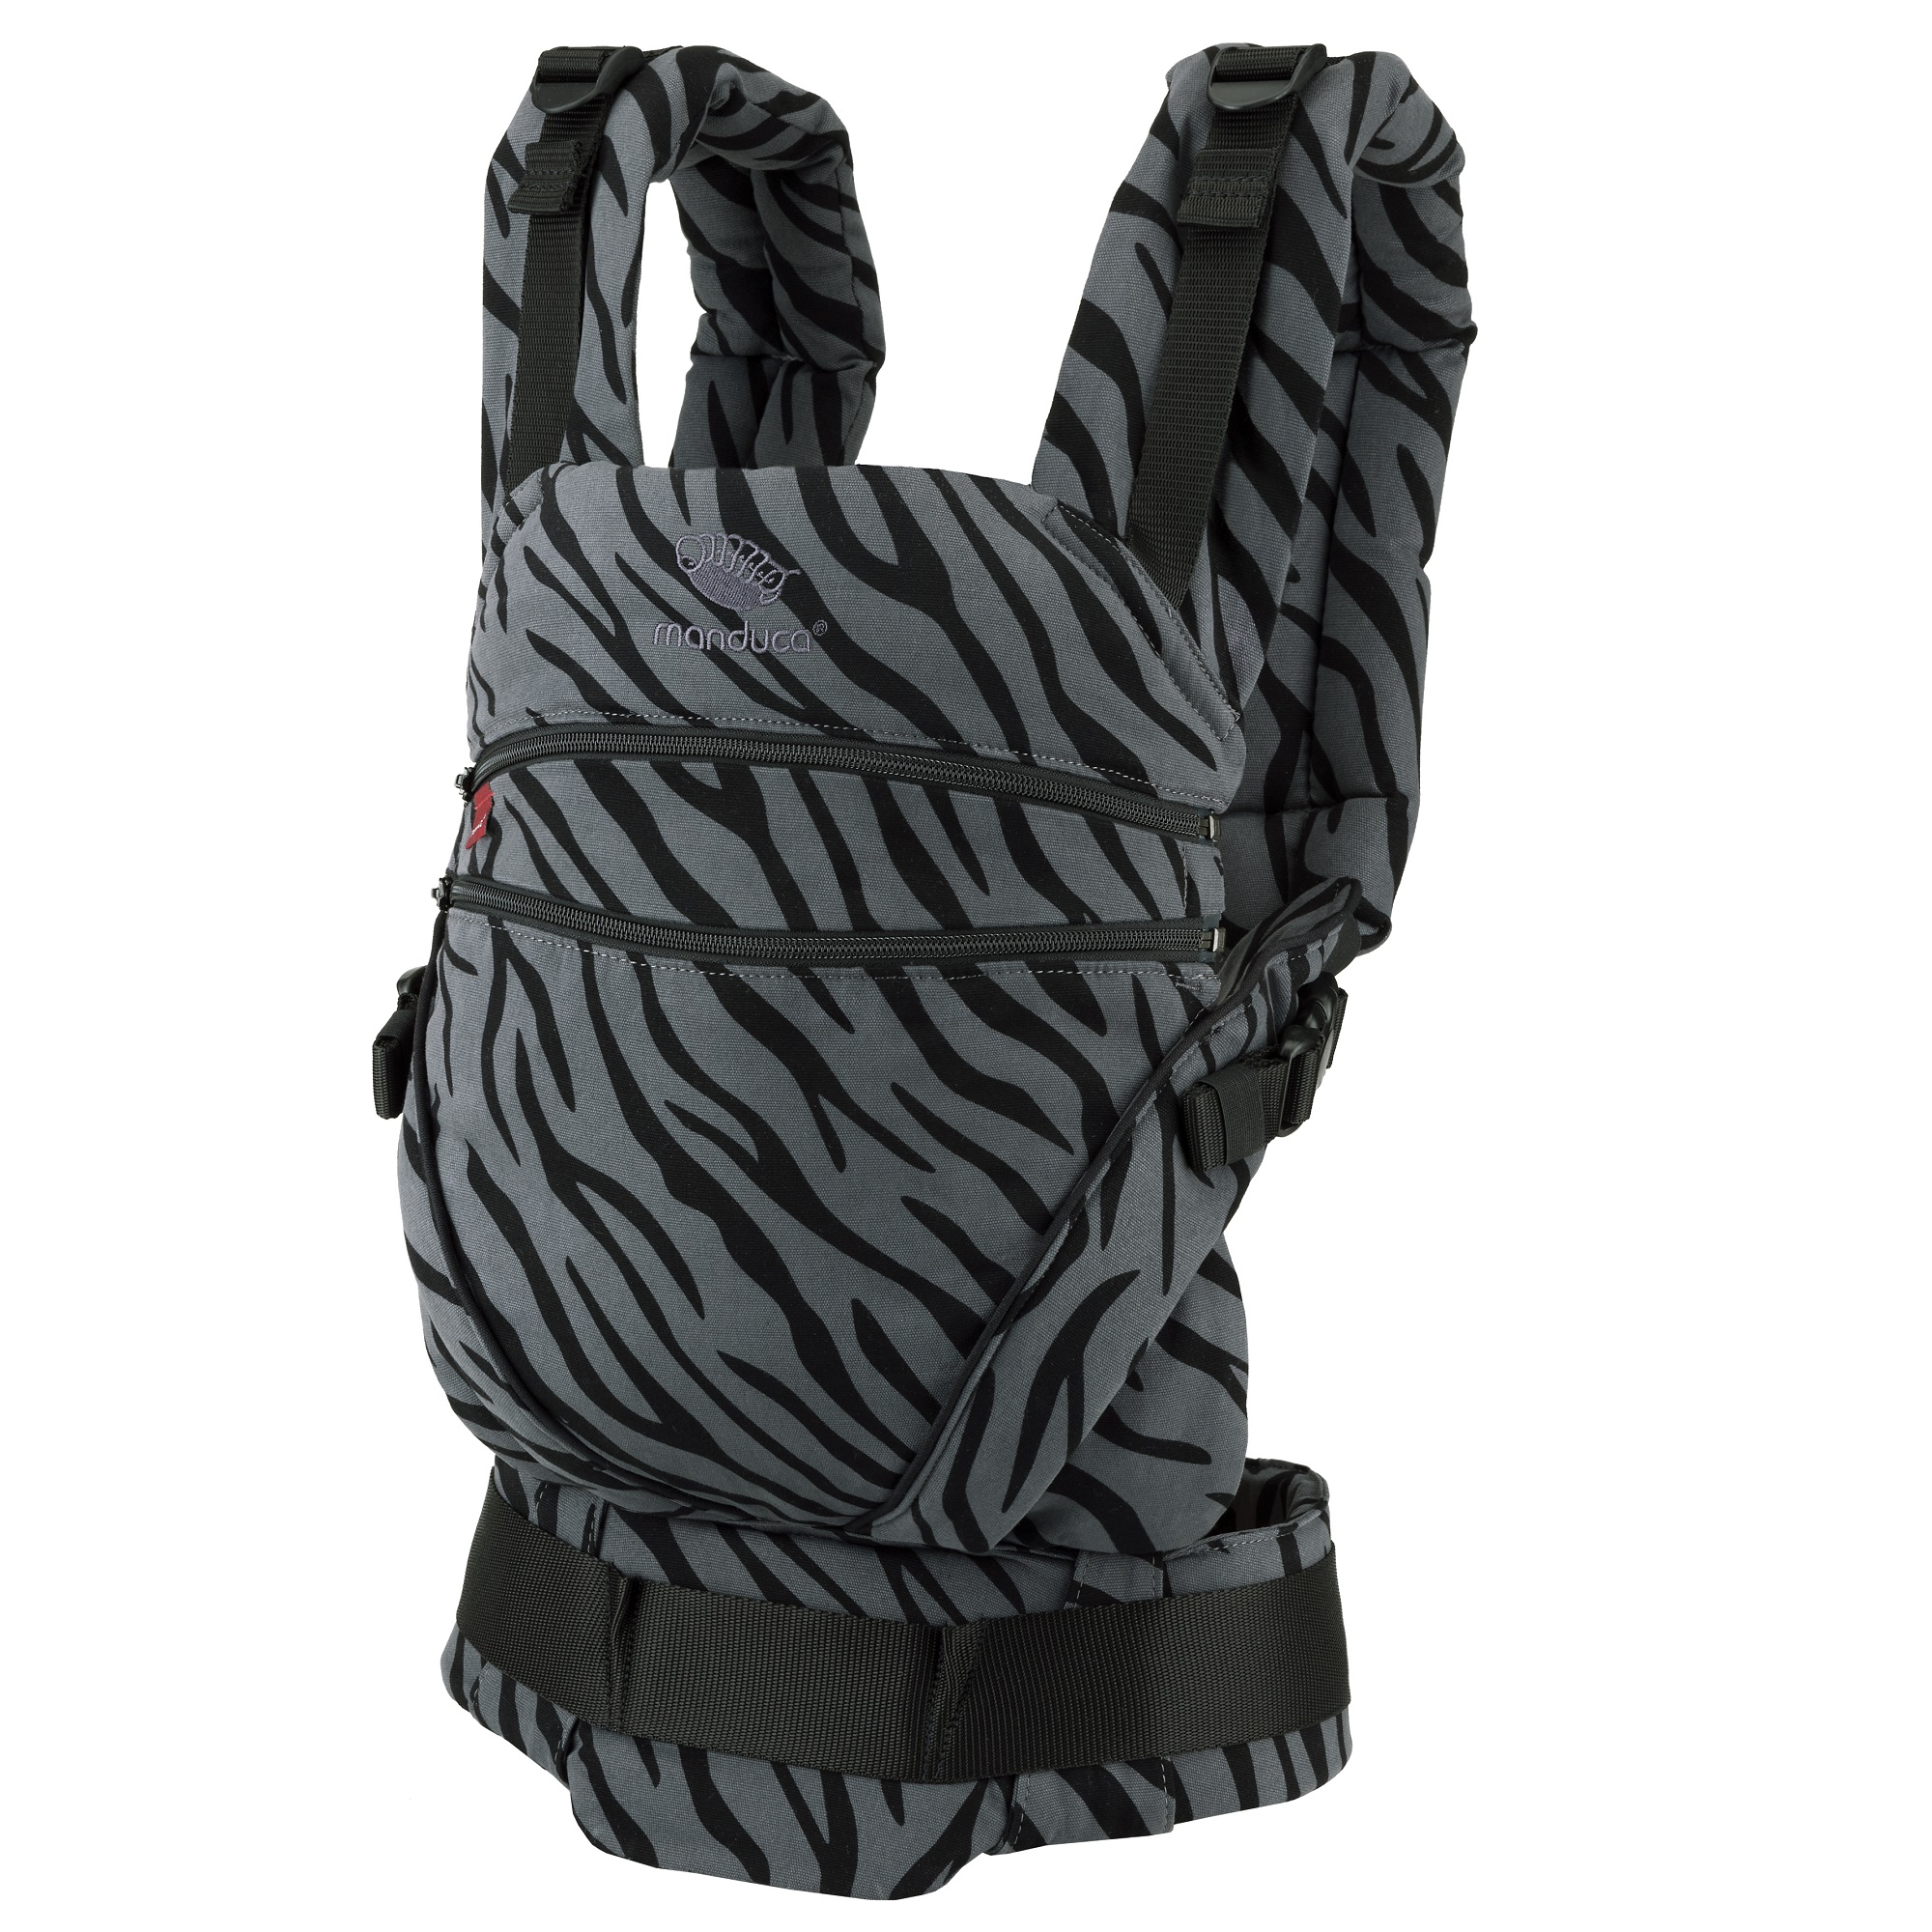 Sistem de purtare pentru copii Port-Bebe XT, Zebra Limited, Manduca